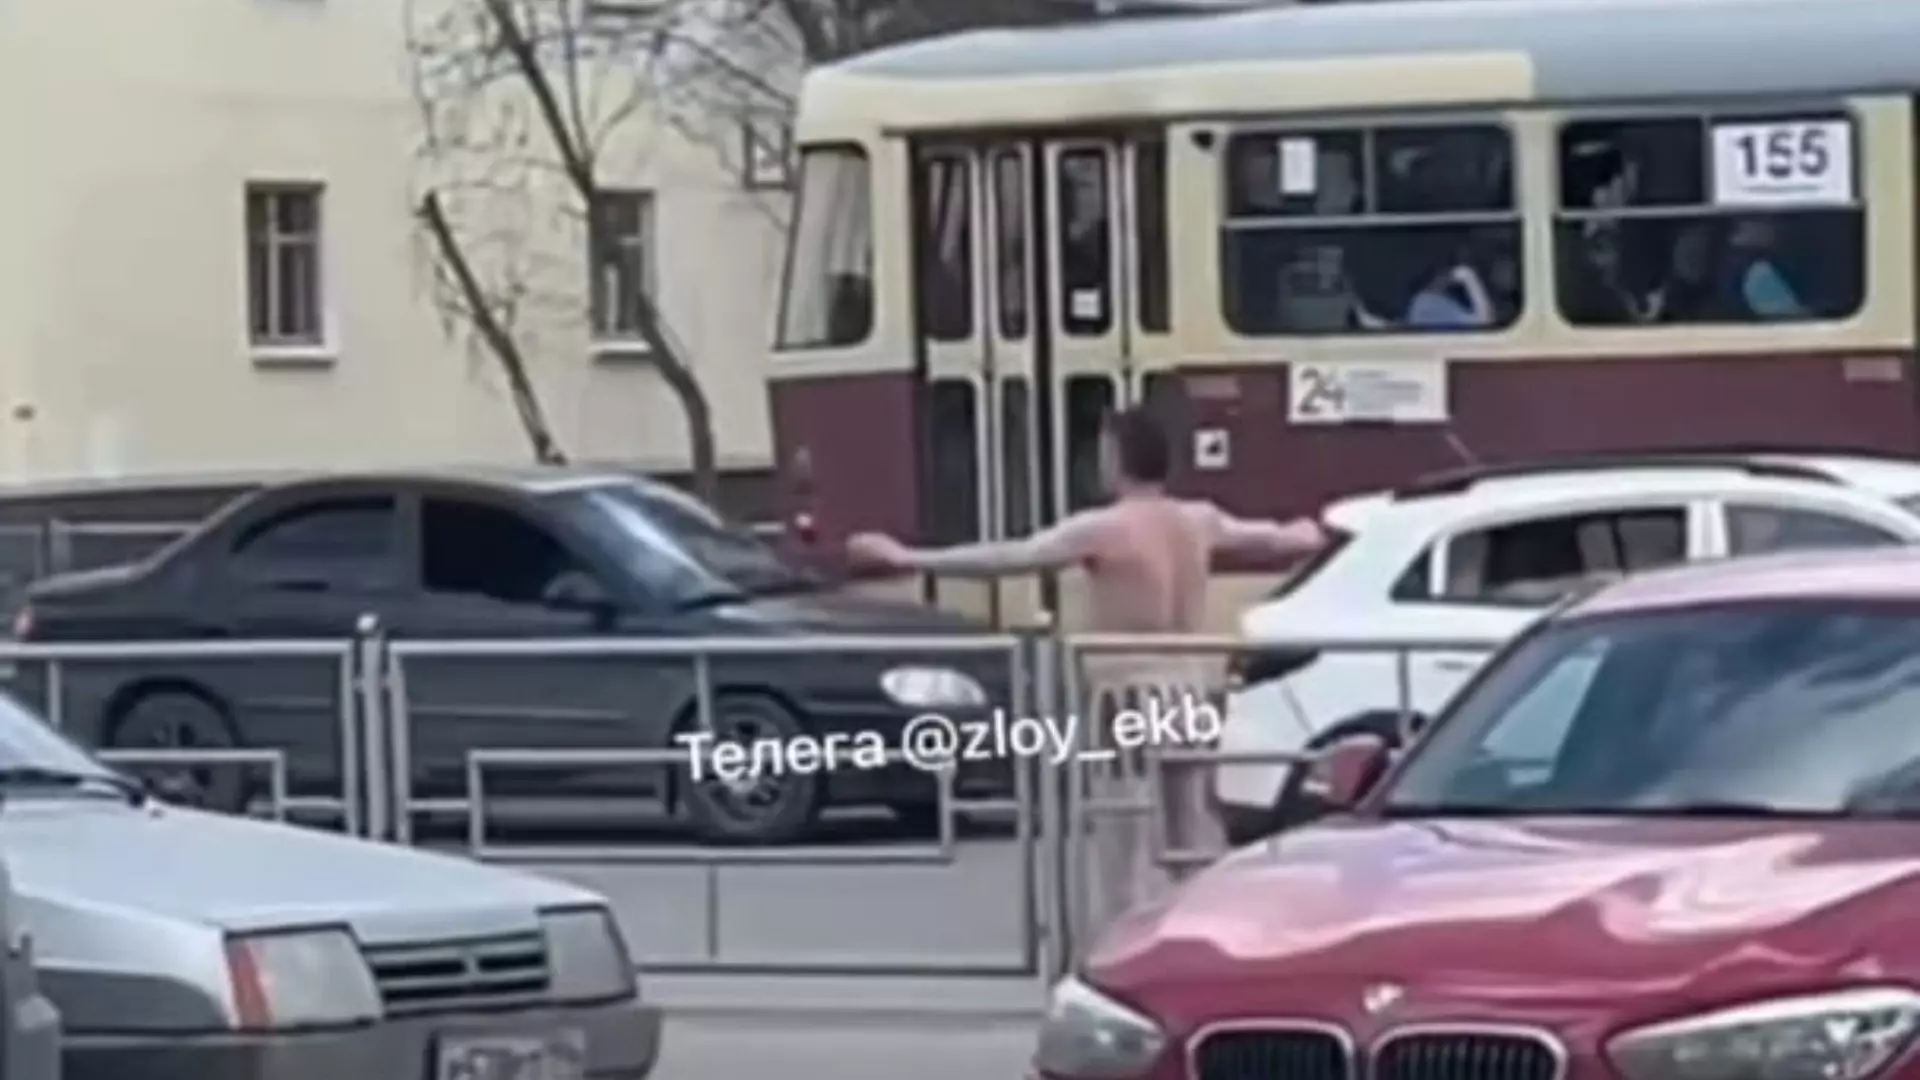 Мужчина в одних трусах разгуливает на улице Донбасской в Екатеринбурге